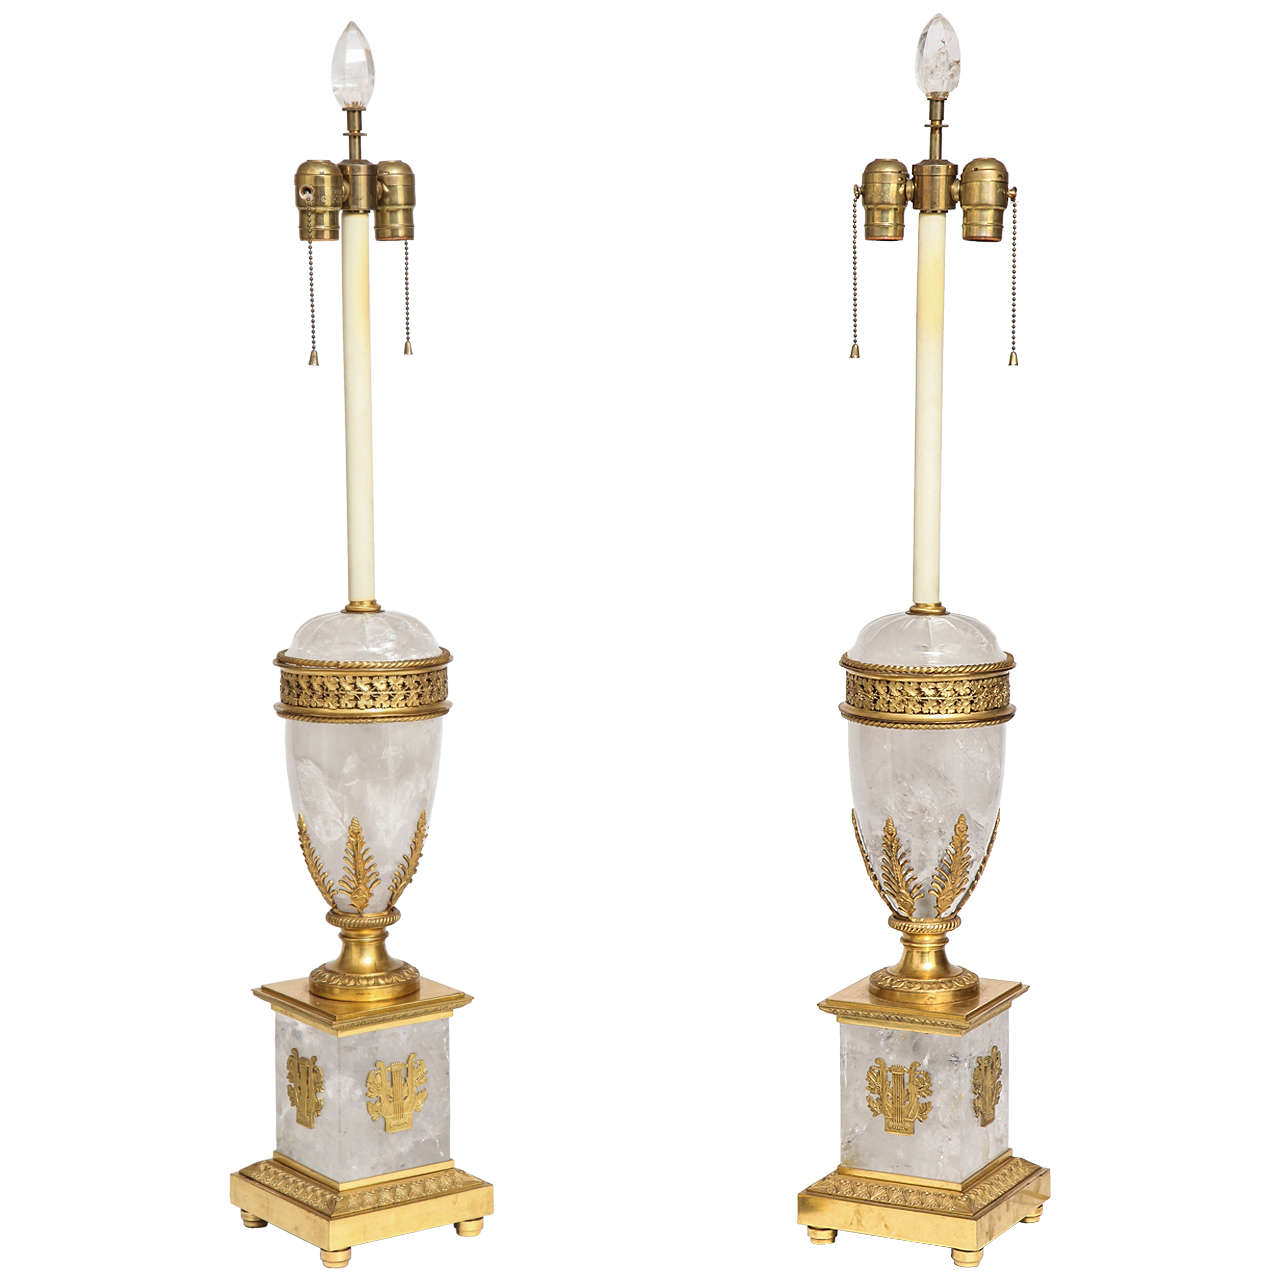 Paire de lampes anciennes néoclassiques françaises en cristal de roche et ormolu